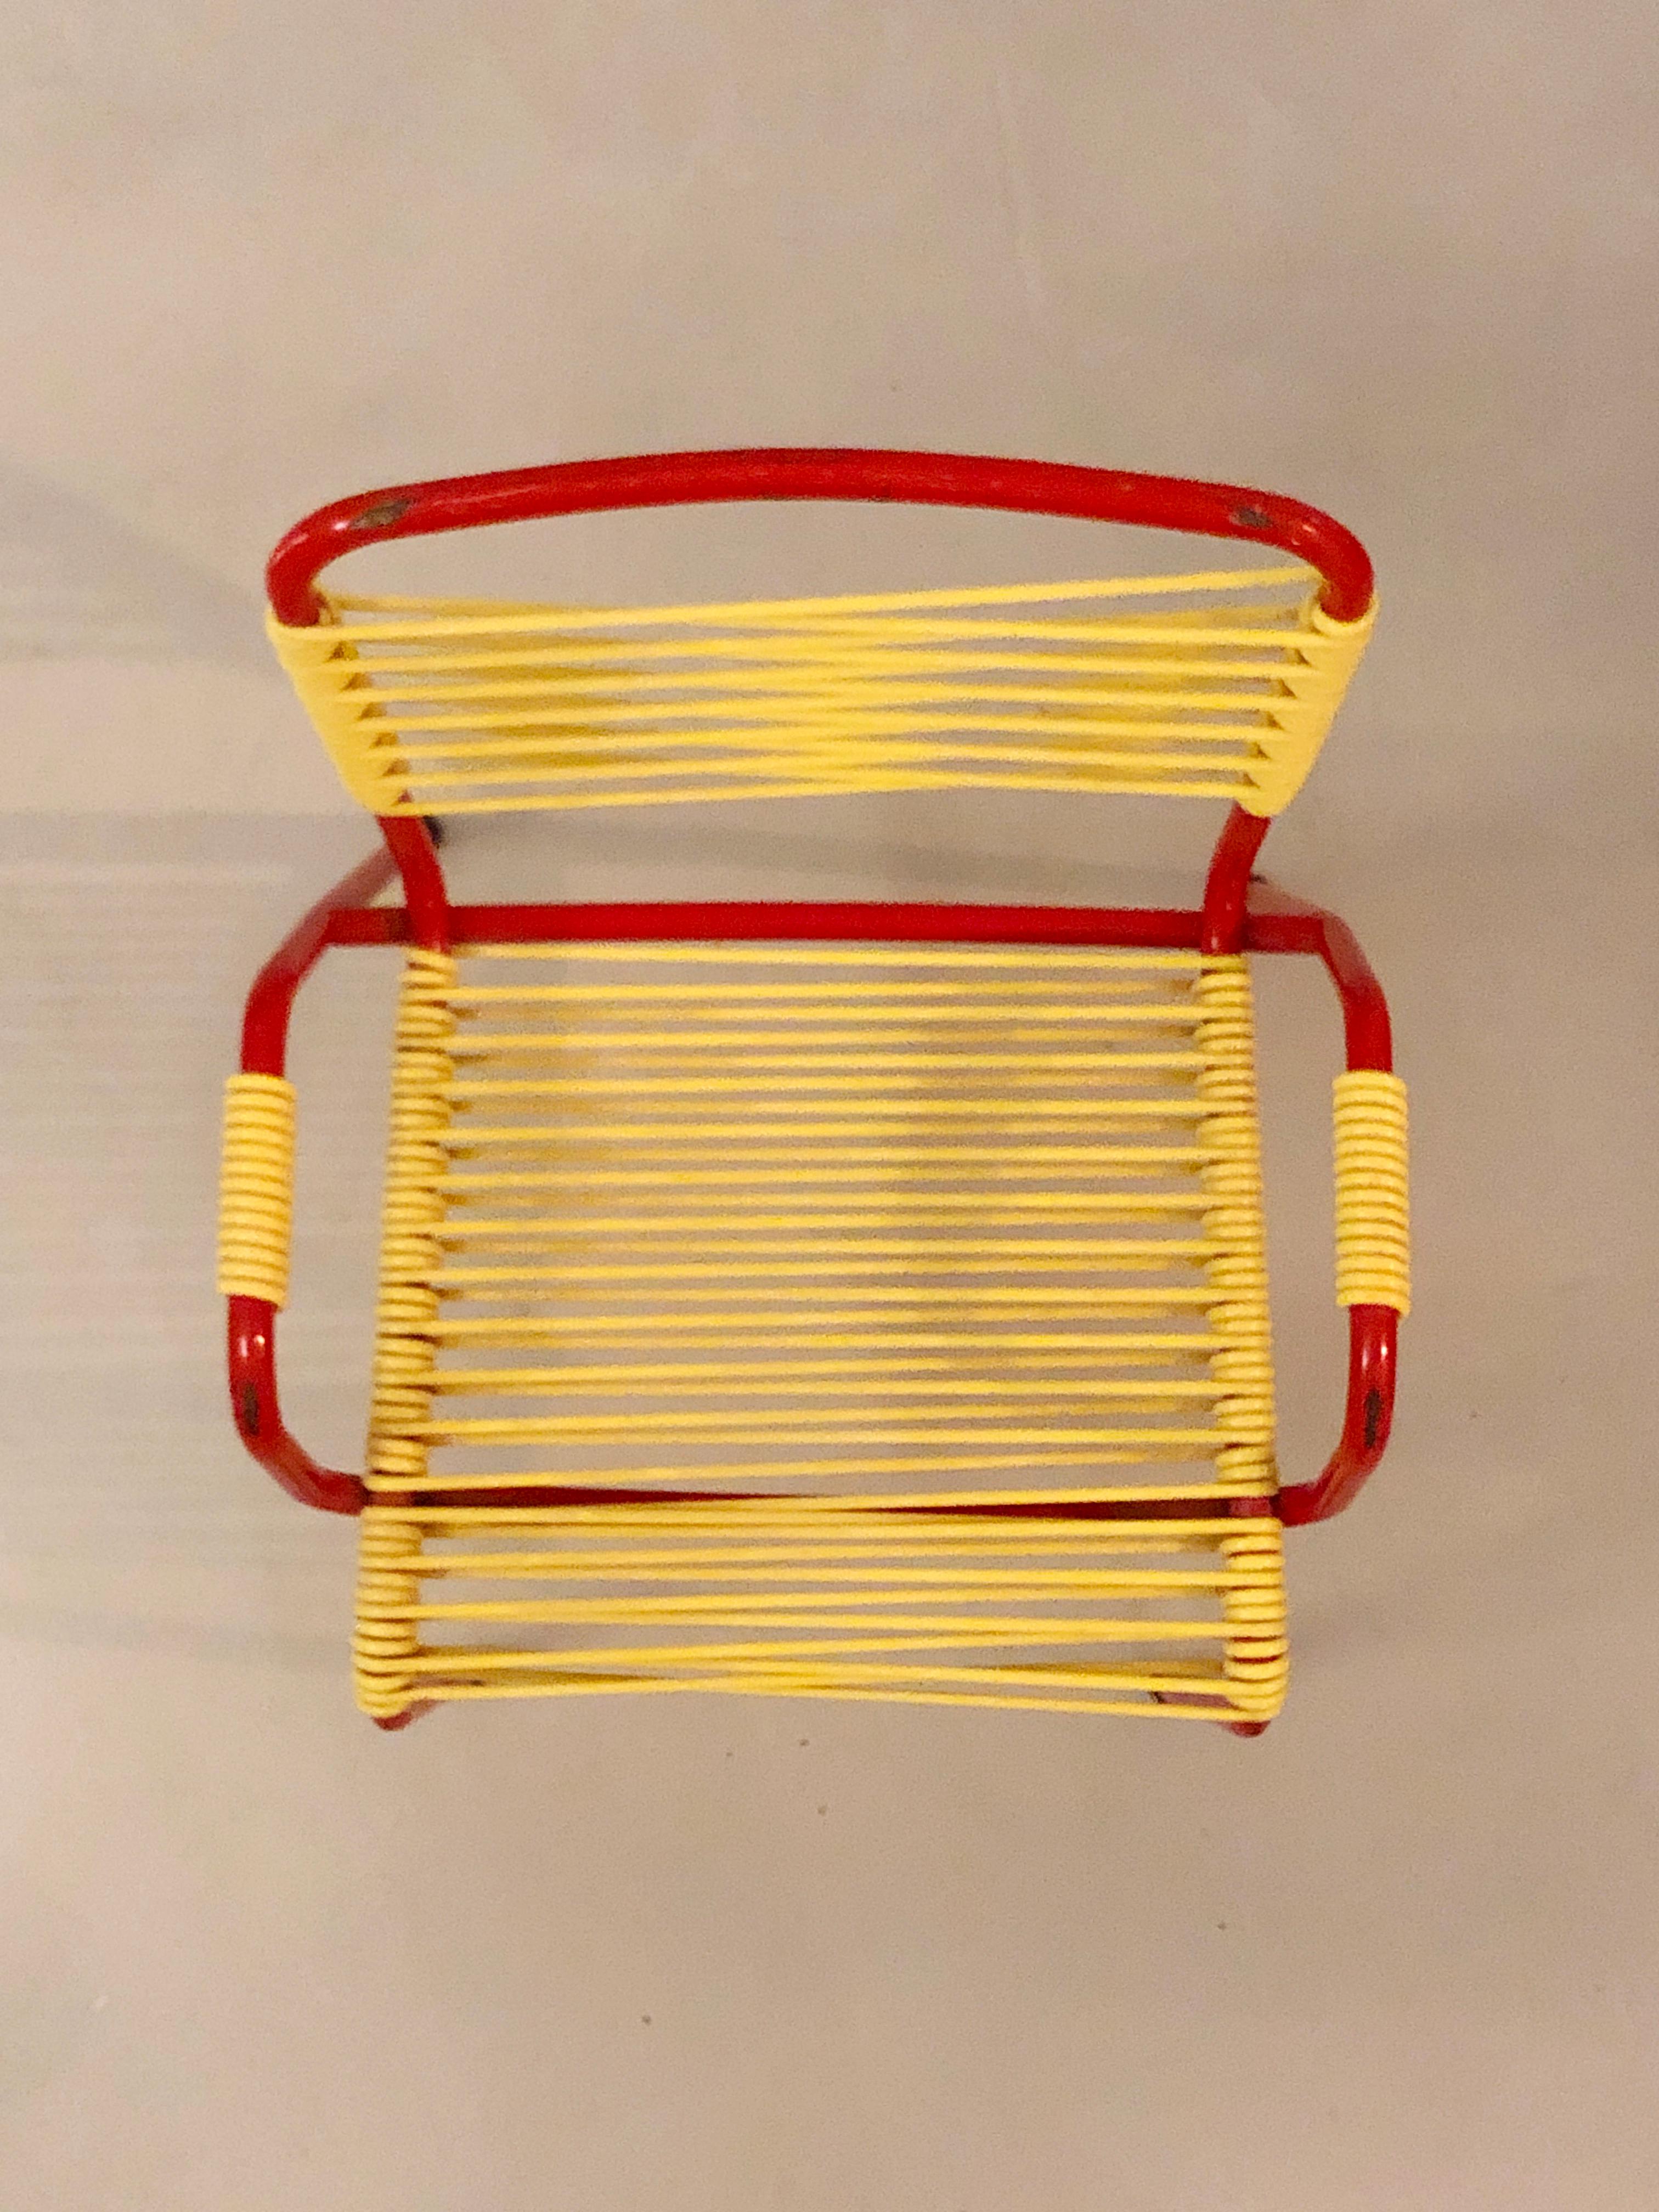 Metalwork Children's chair scoubidou Torck - 1950's For Sale